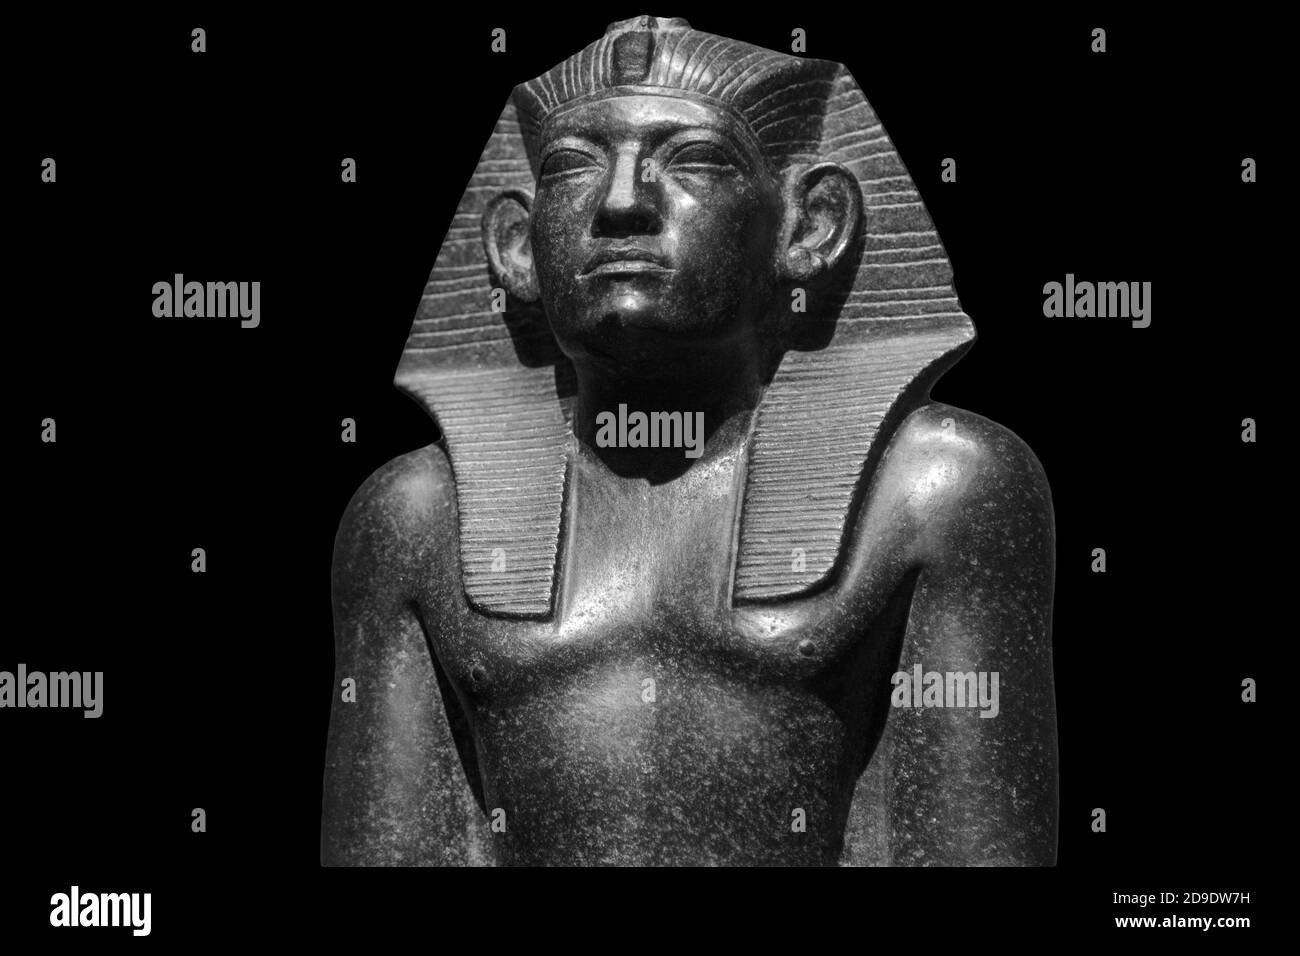 Pharaon dieux égyptiens mort religion symbole statue de pierre isolée sur noir. Masque de pharaon de pierre toutankhamen sur fond noir Banque D'Images